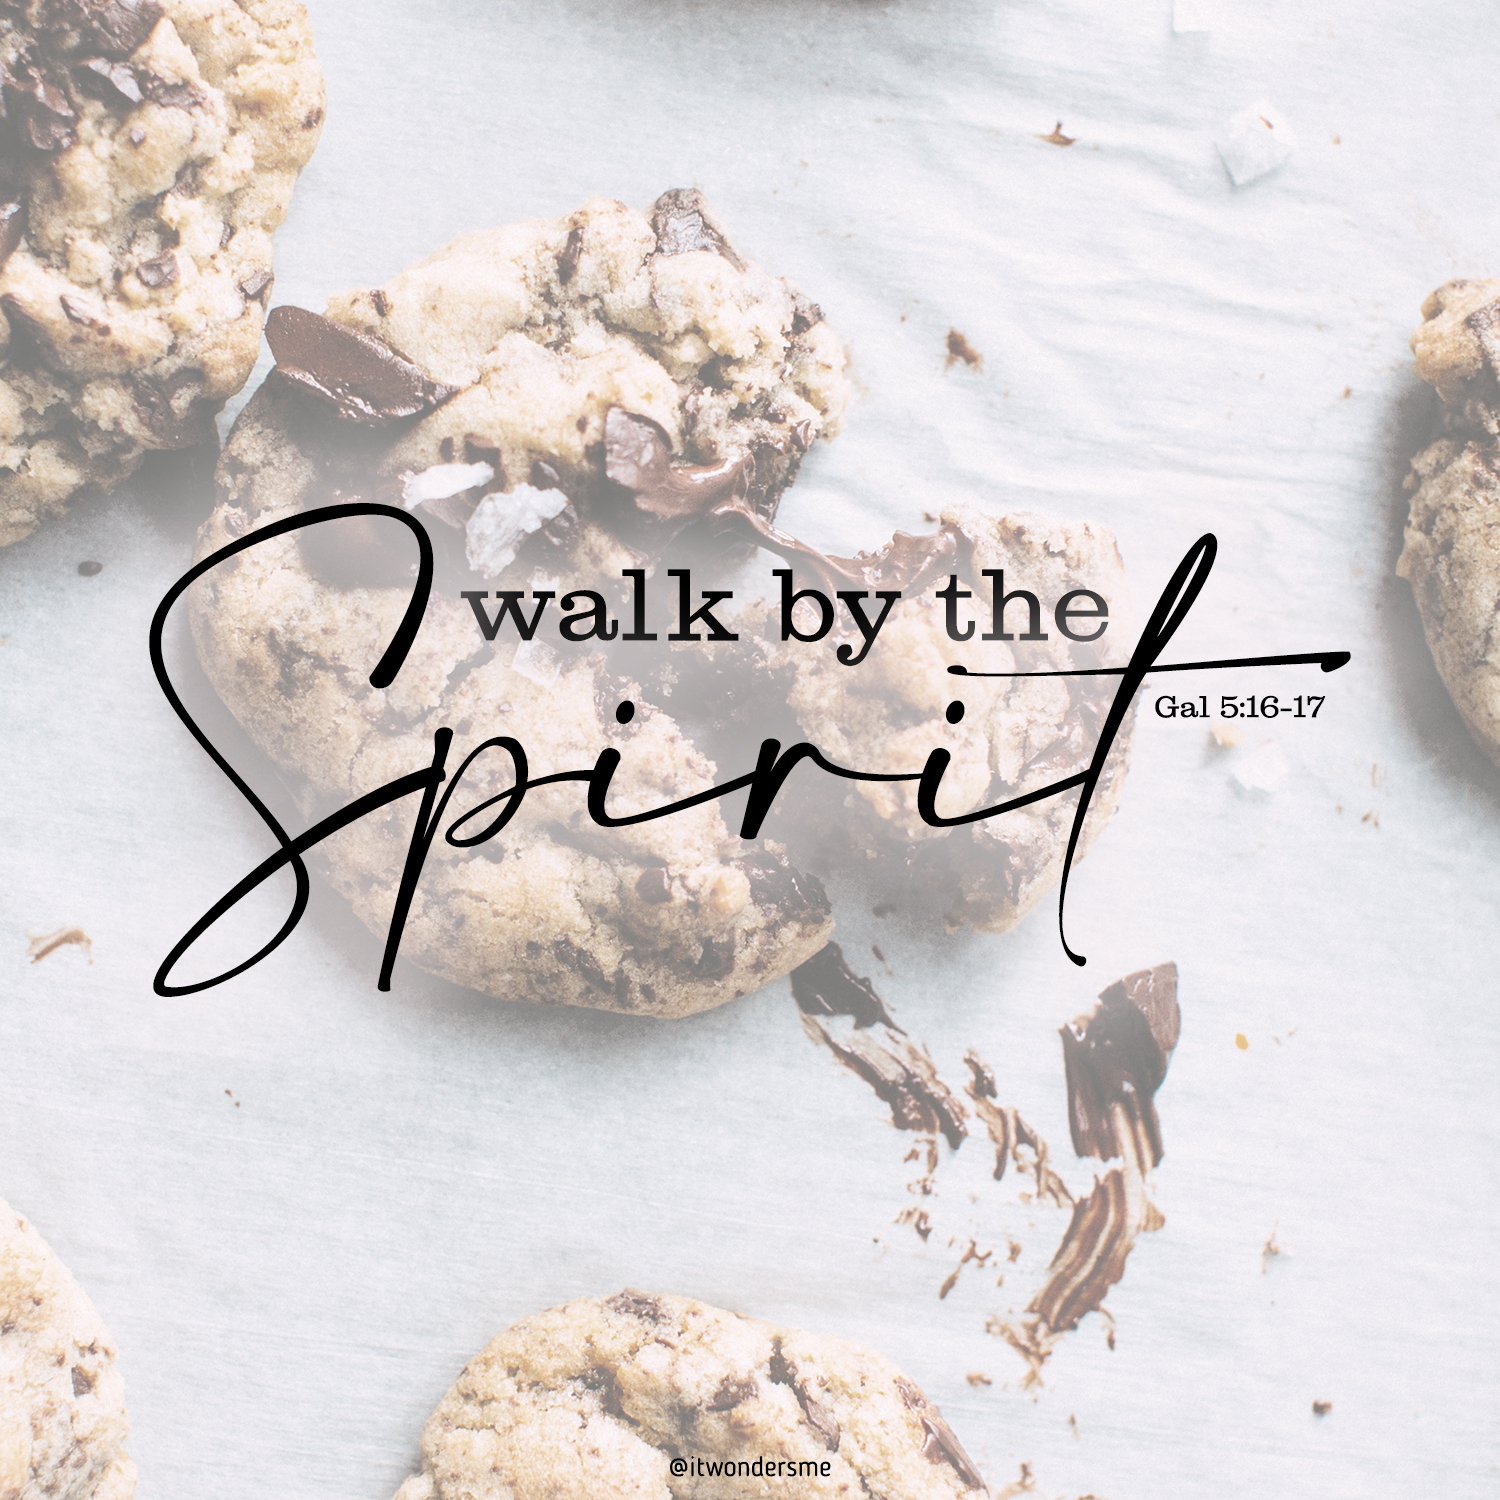 Walk by the spirit